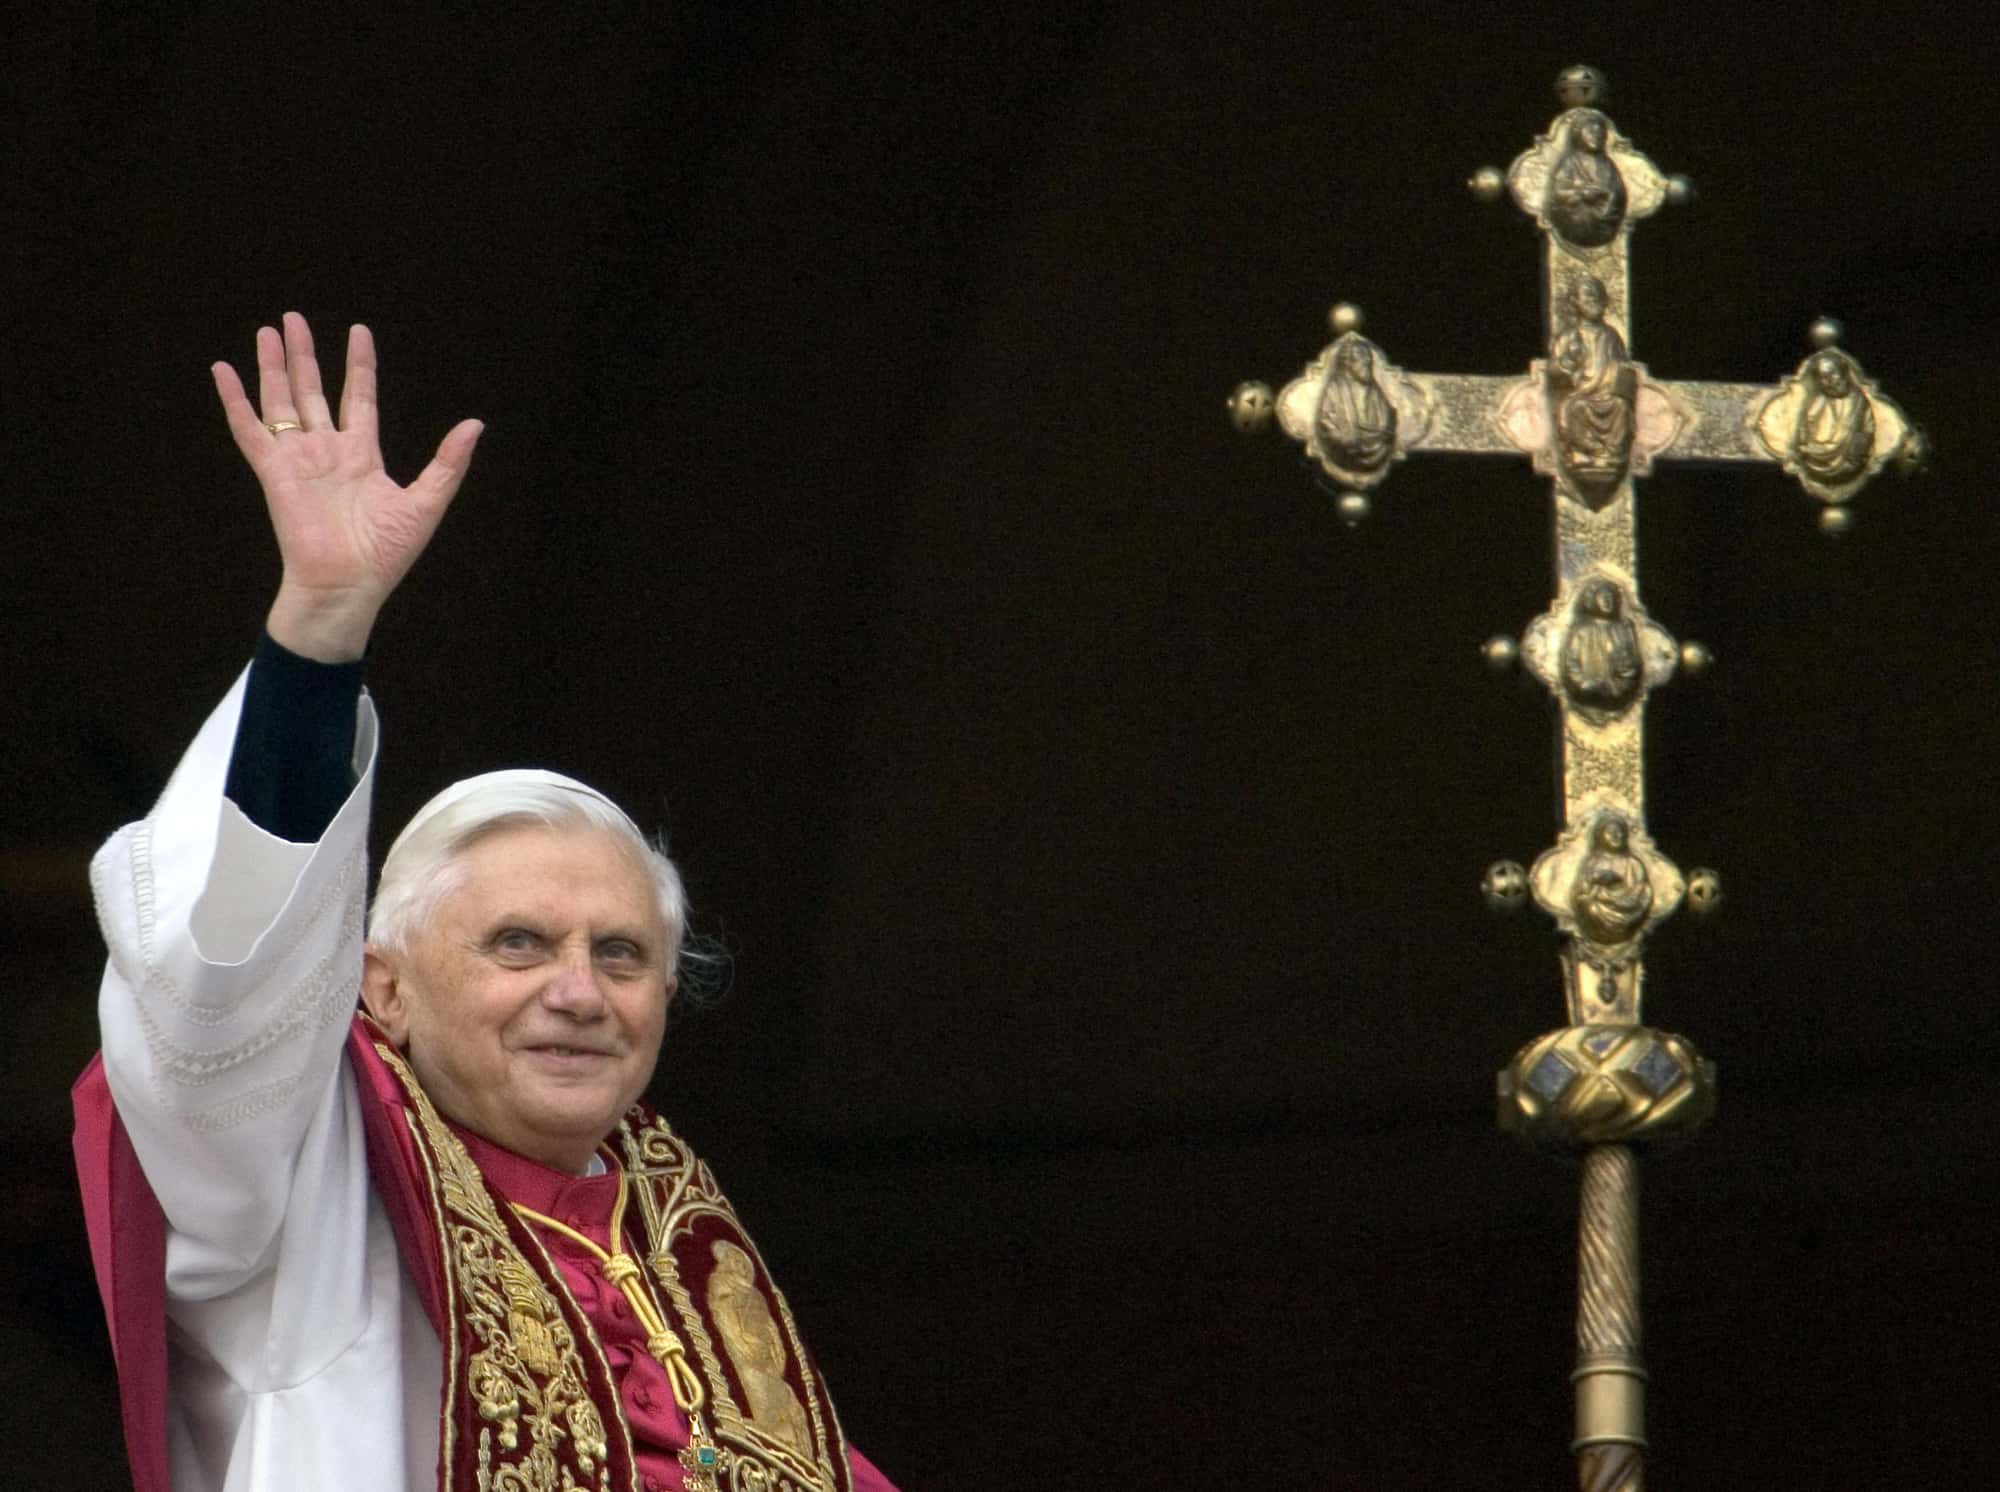 Foto tomada el 19 de abril de 2005 en la Ciudad del Vaticano del alemán Joseph Ratzinger, el nuevo Papa Benedicto XVI, saludando a la multitud desde la ventana del balcón principal de la Basílica de San Pedro después de ser elegido Papa número 265 de la Iglesia Católica Romana.